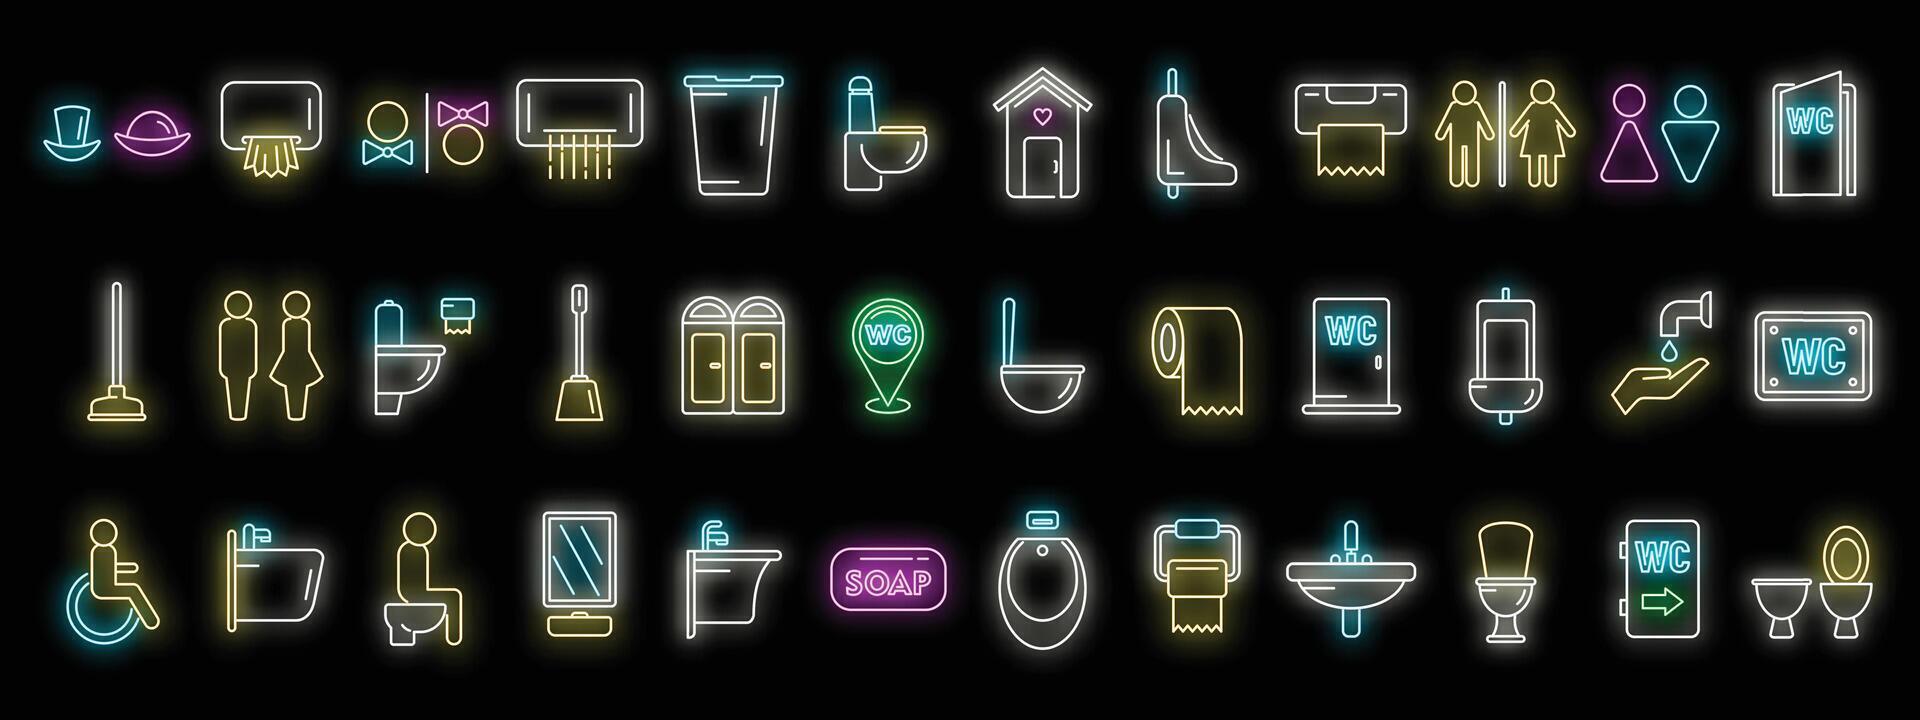 conjunto de ícones de wc vector neon